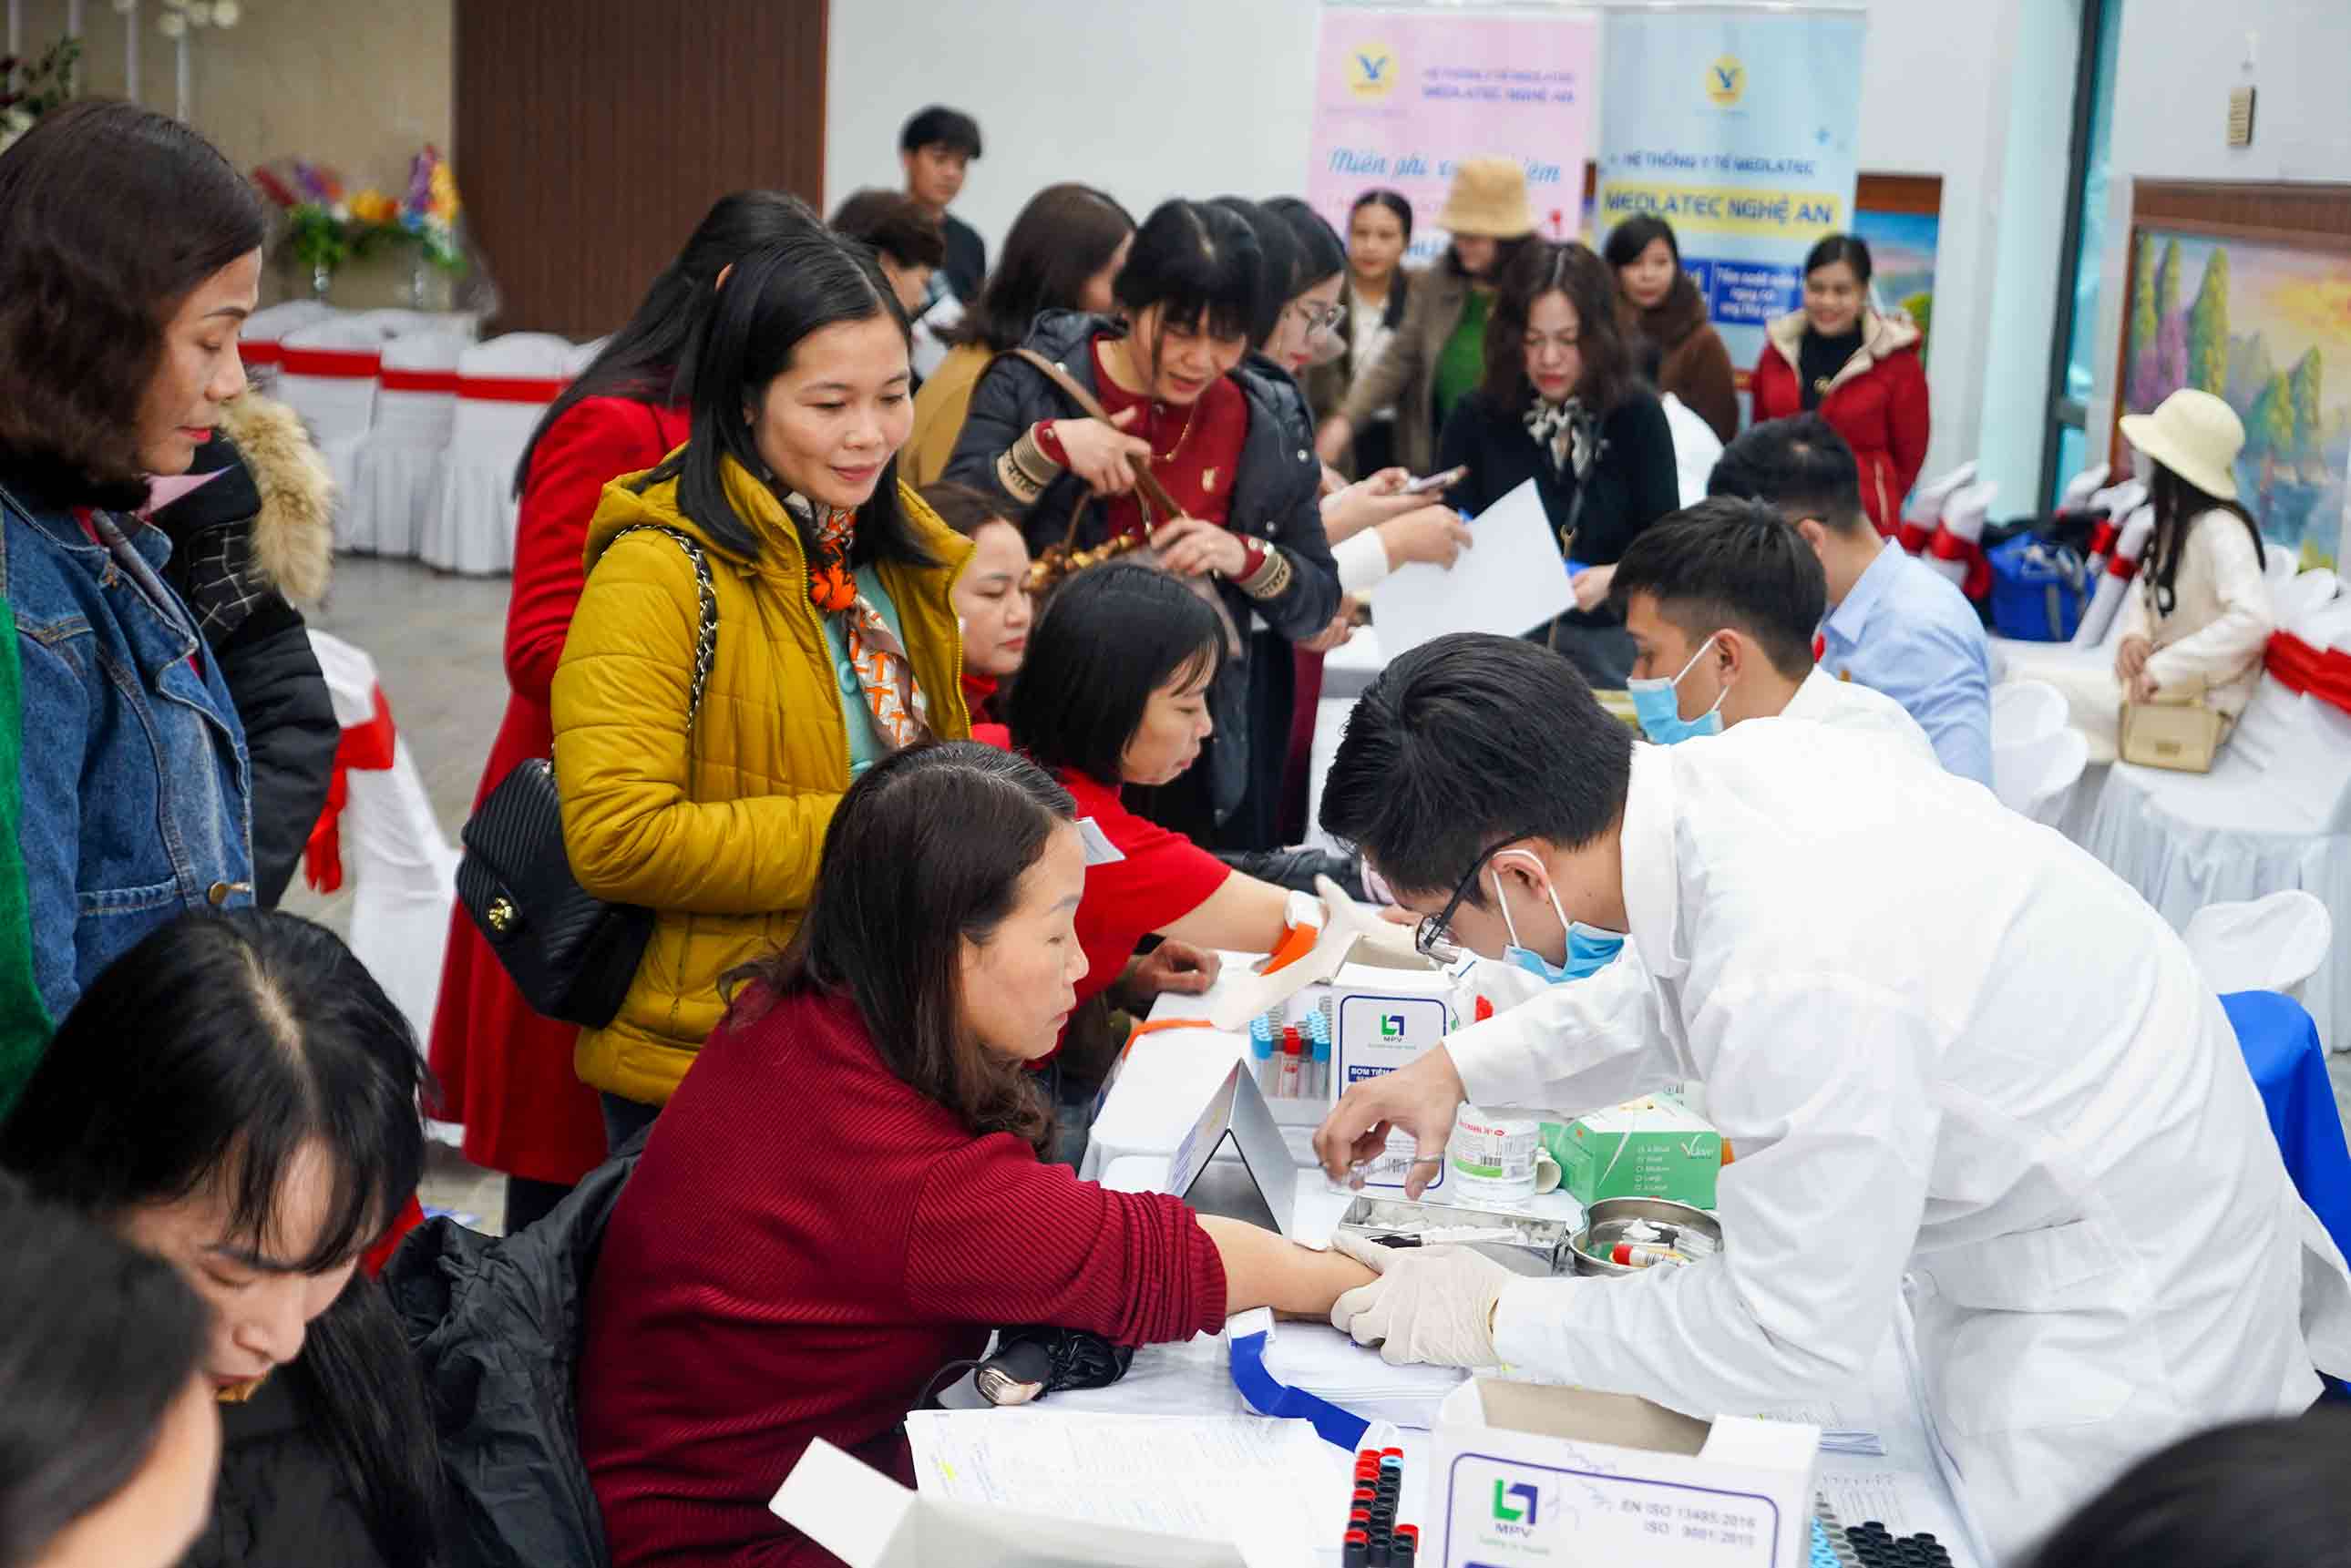 Tại chương trình, đã có hơn 150 giáo viên đã được thăm, khám kiểm tra sức khỏe. Ảnh: Quang Đại